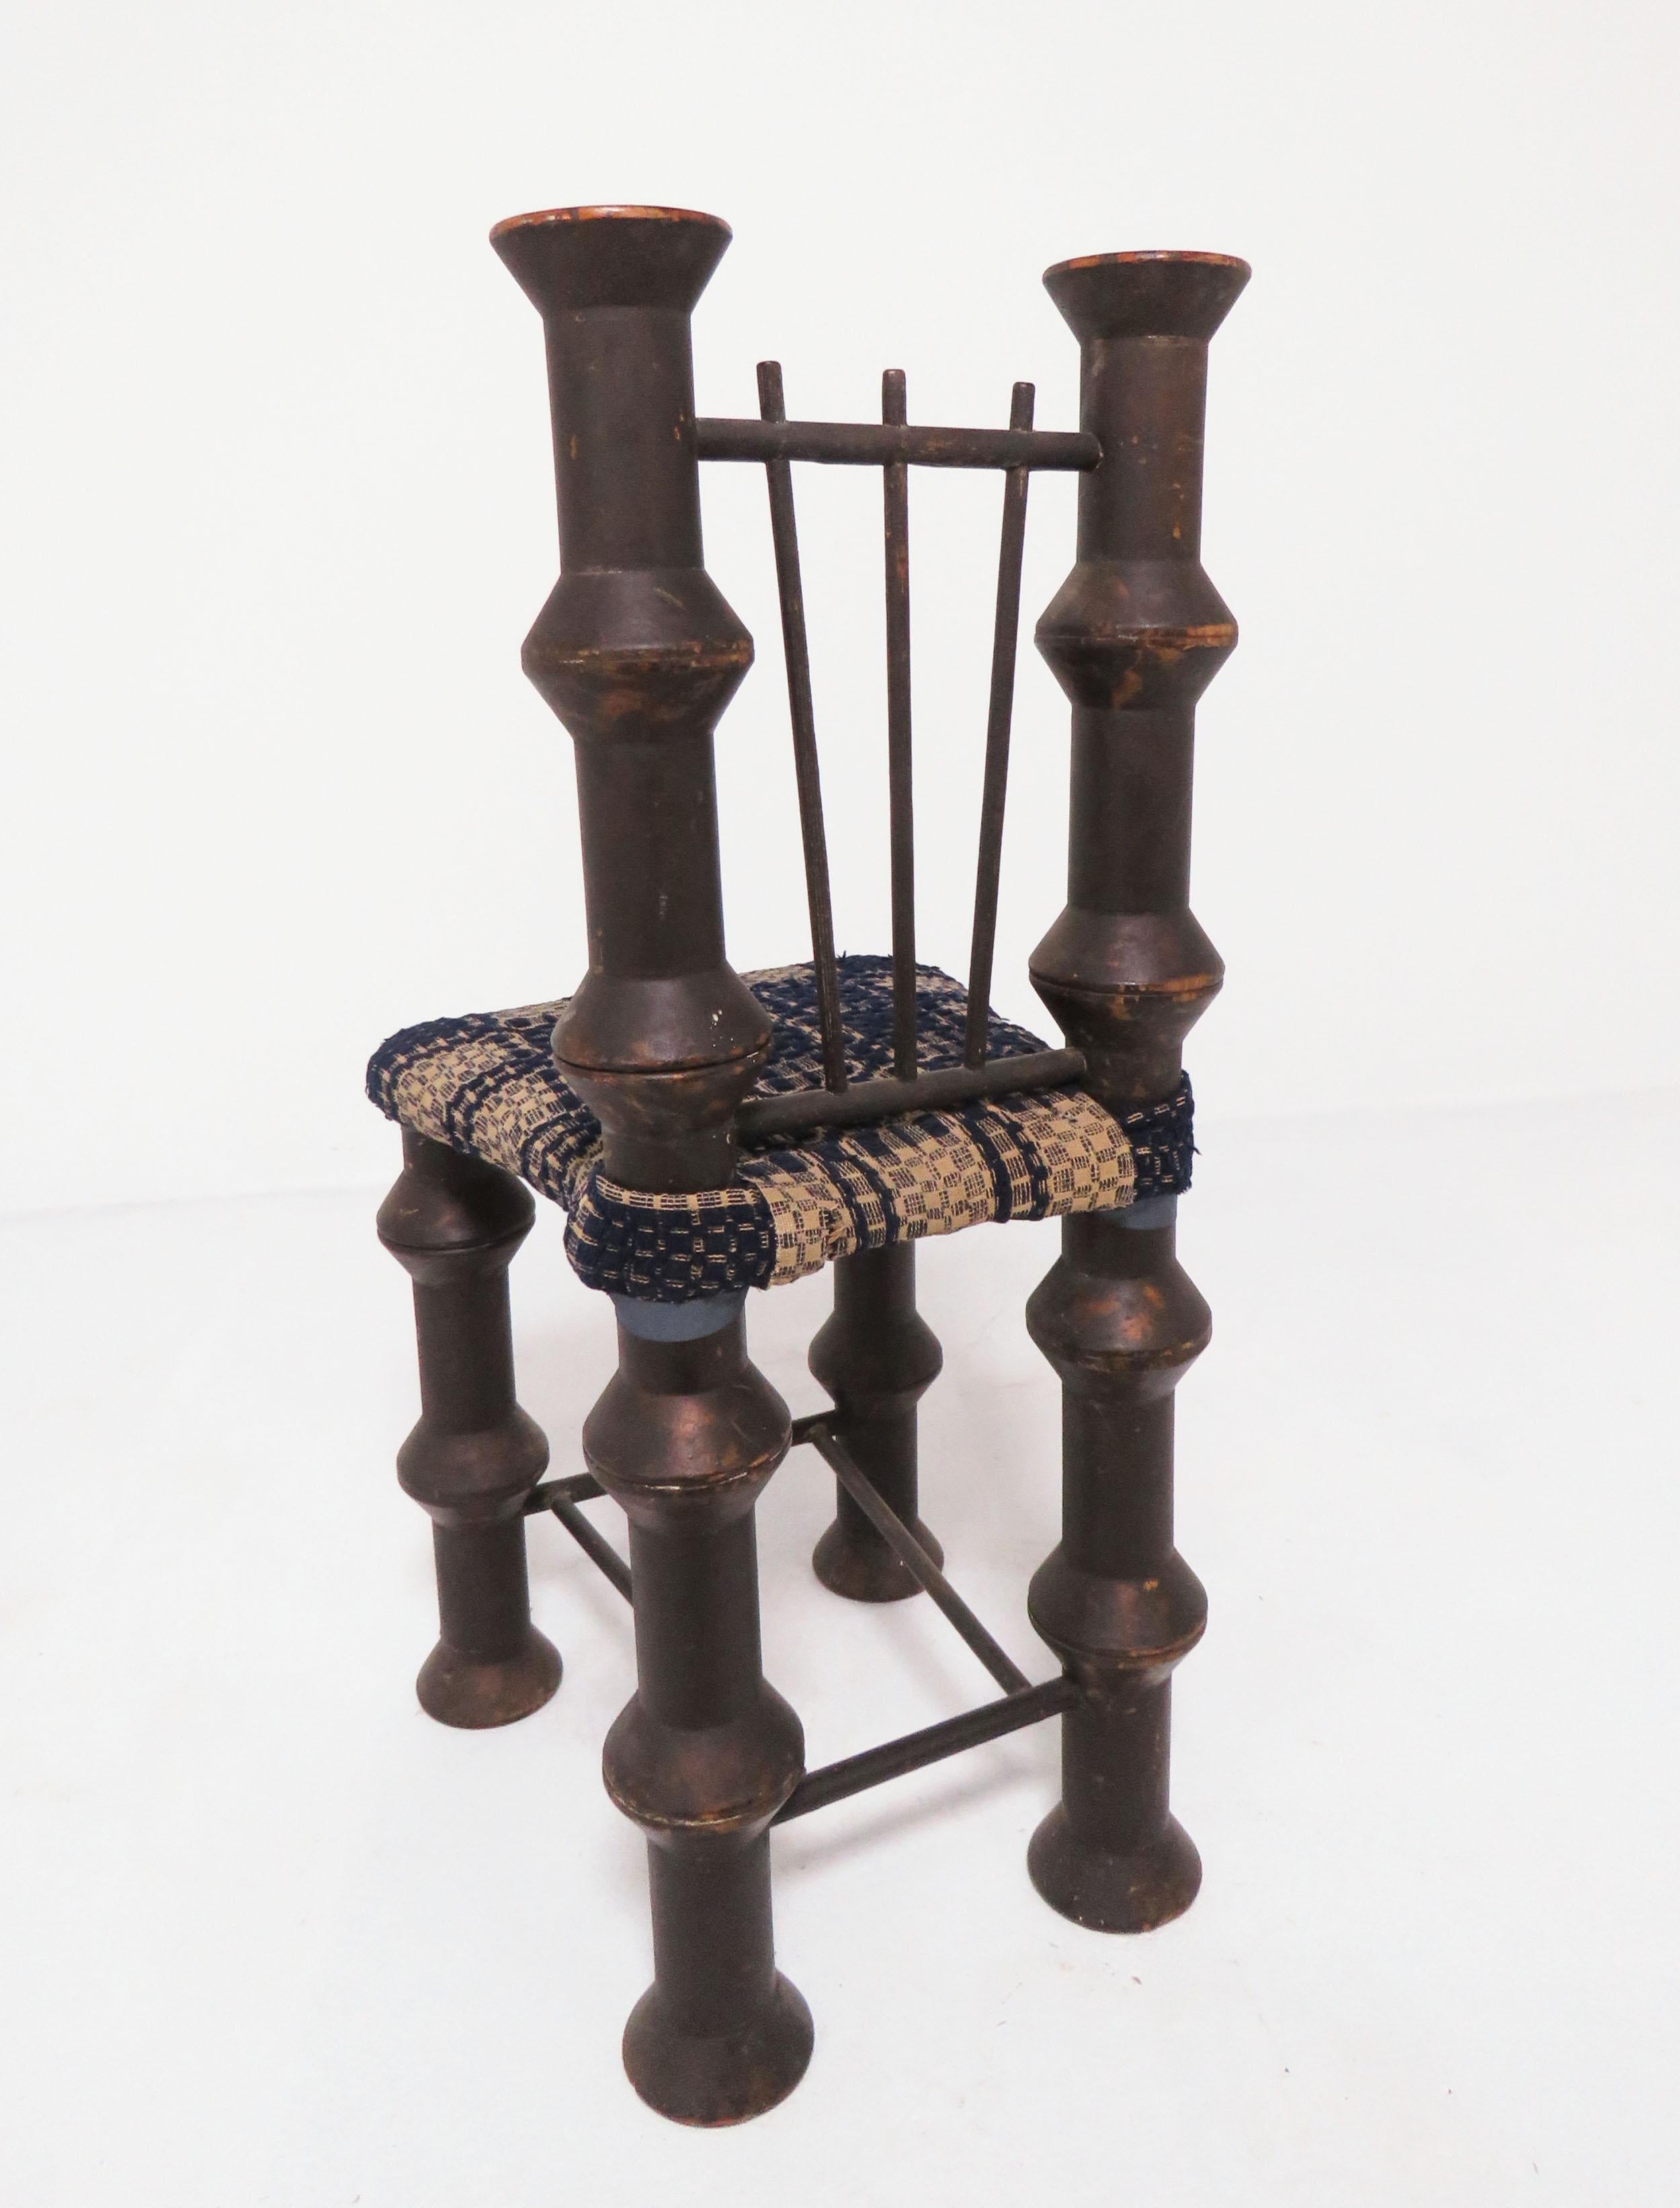 American Early 20th Century Folk Art Industrial Era Spool Chair